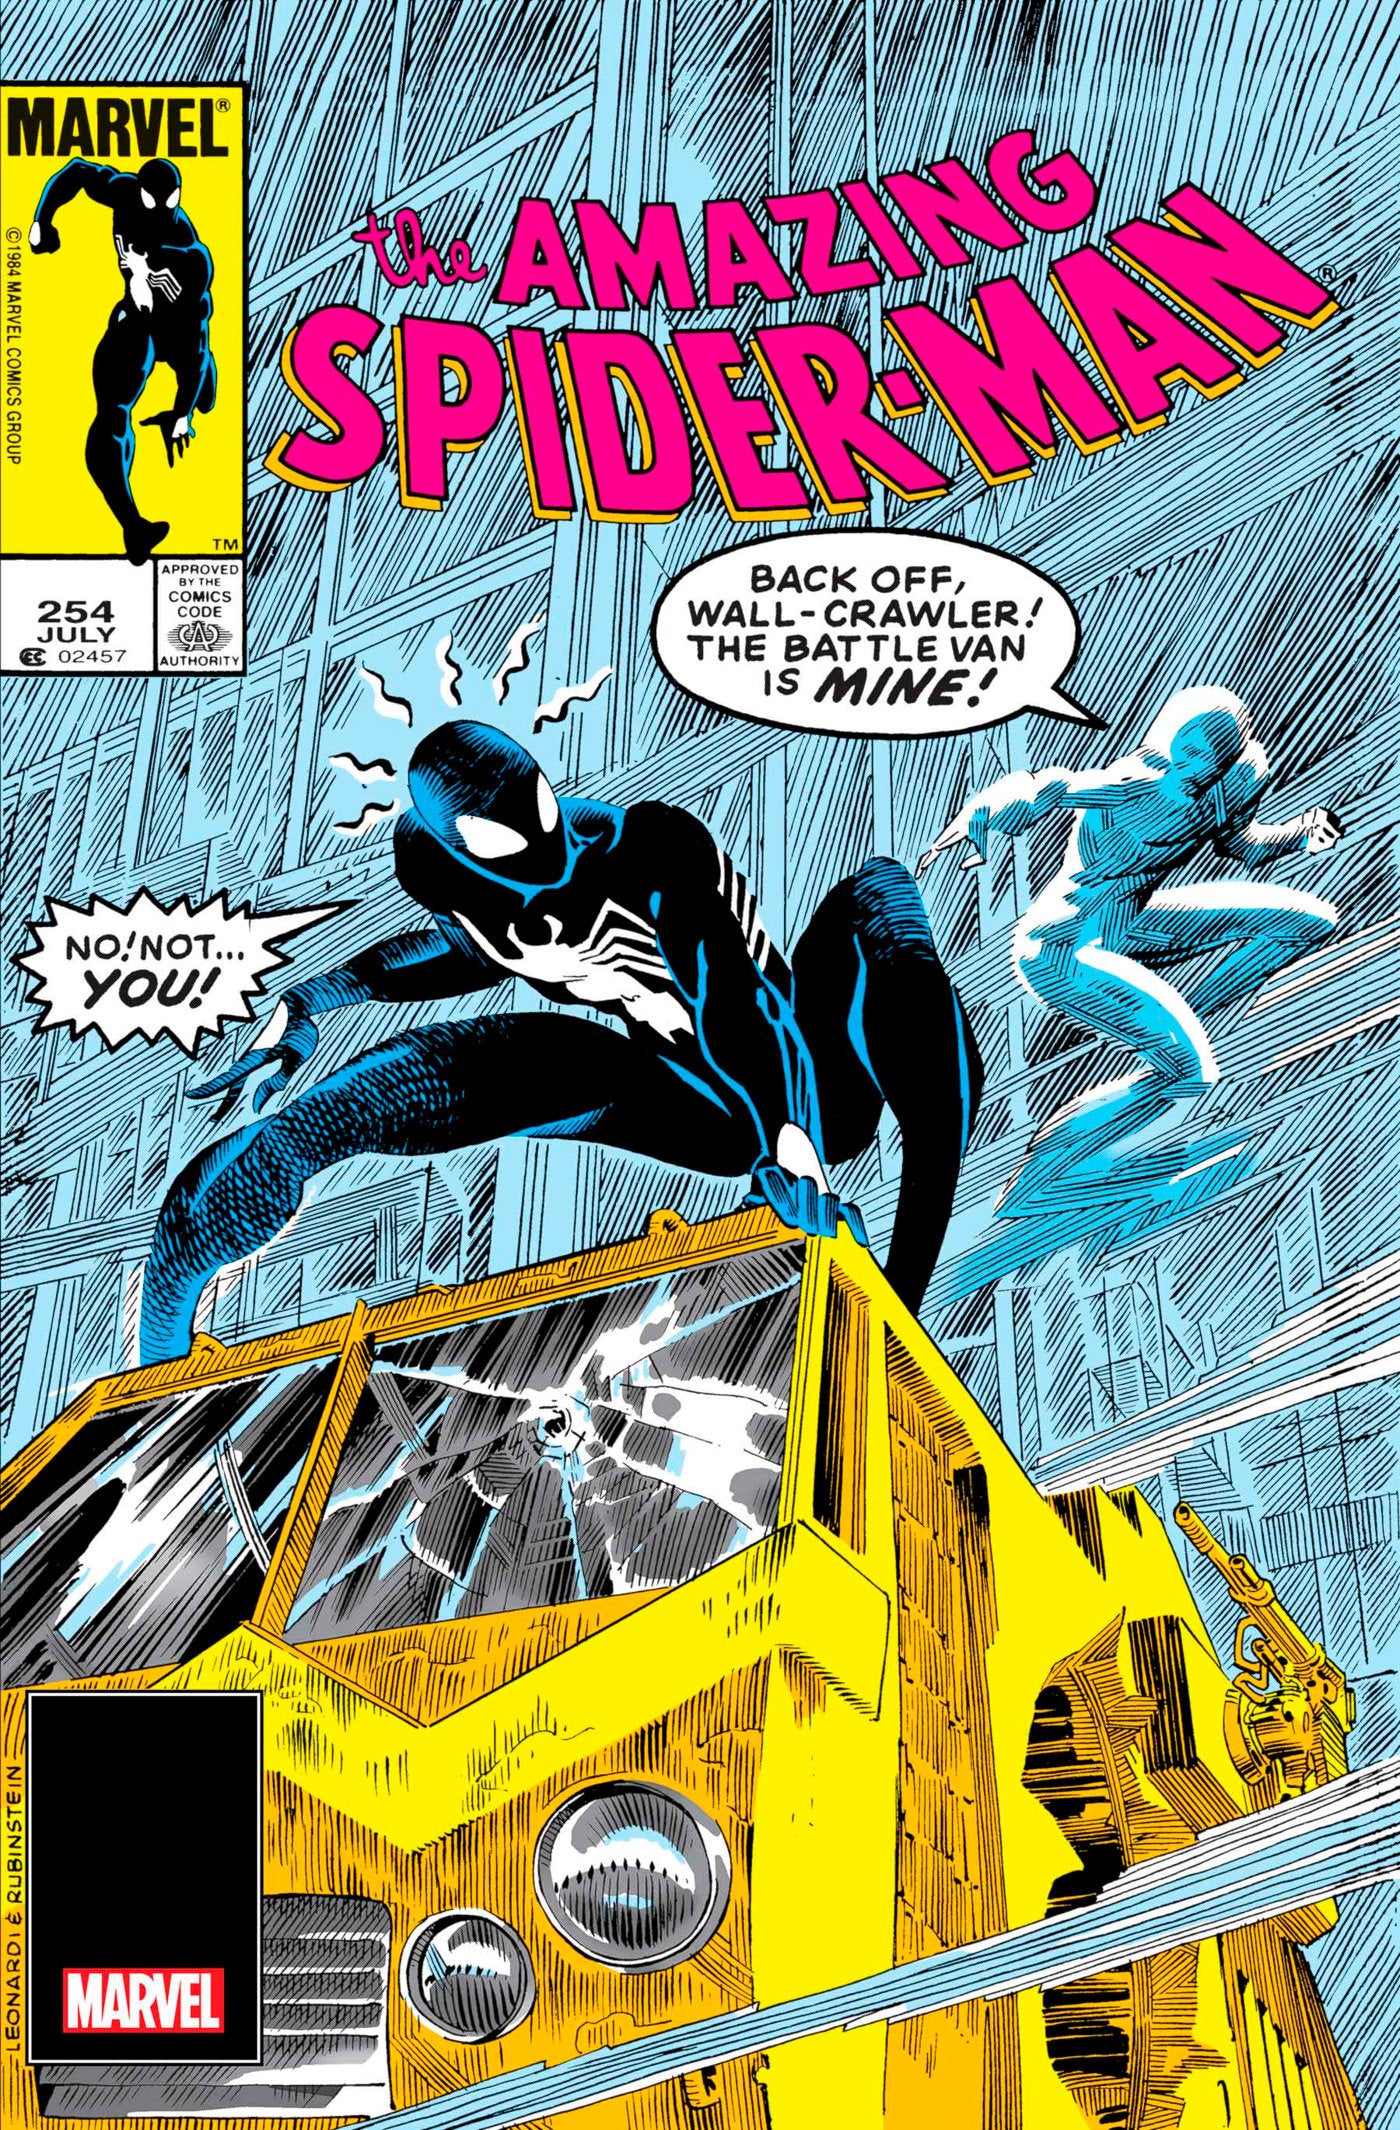 Amazing Spider-Man #254 Facsimile Edition | Game Master's Emporium (The New GME)